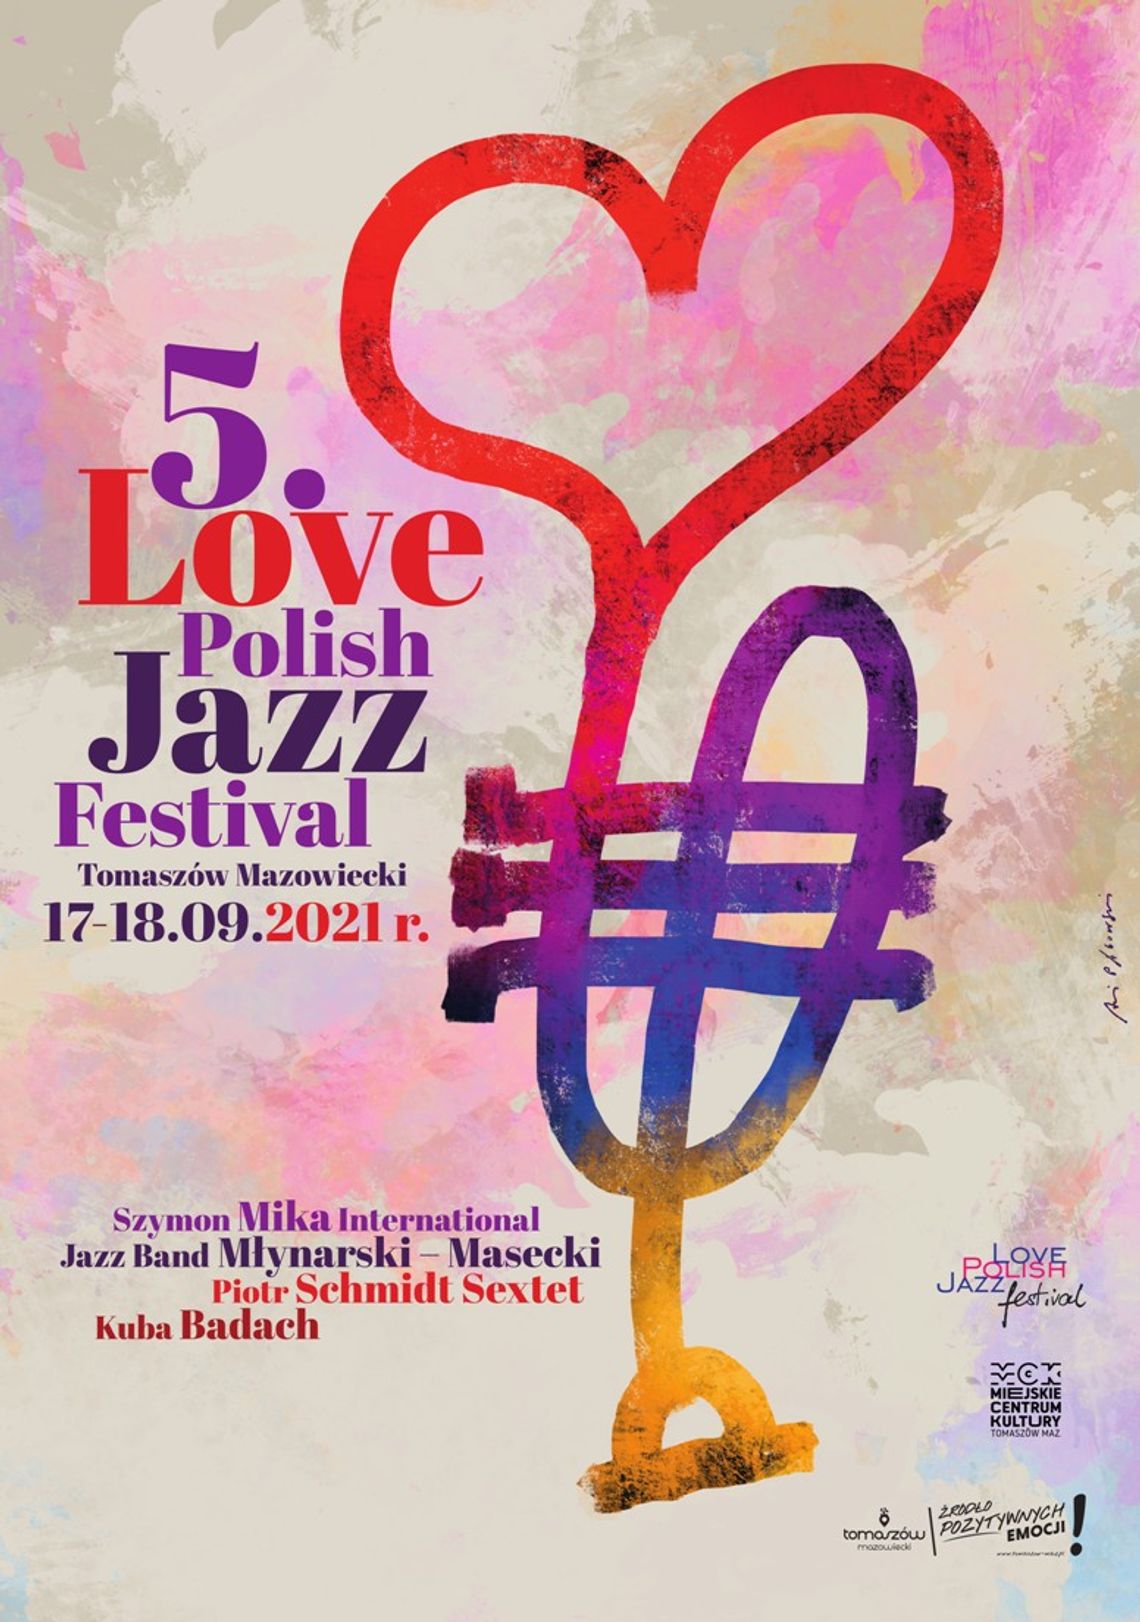 Love Polish Jazz Festival - to już dziś